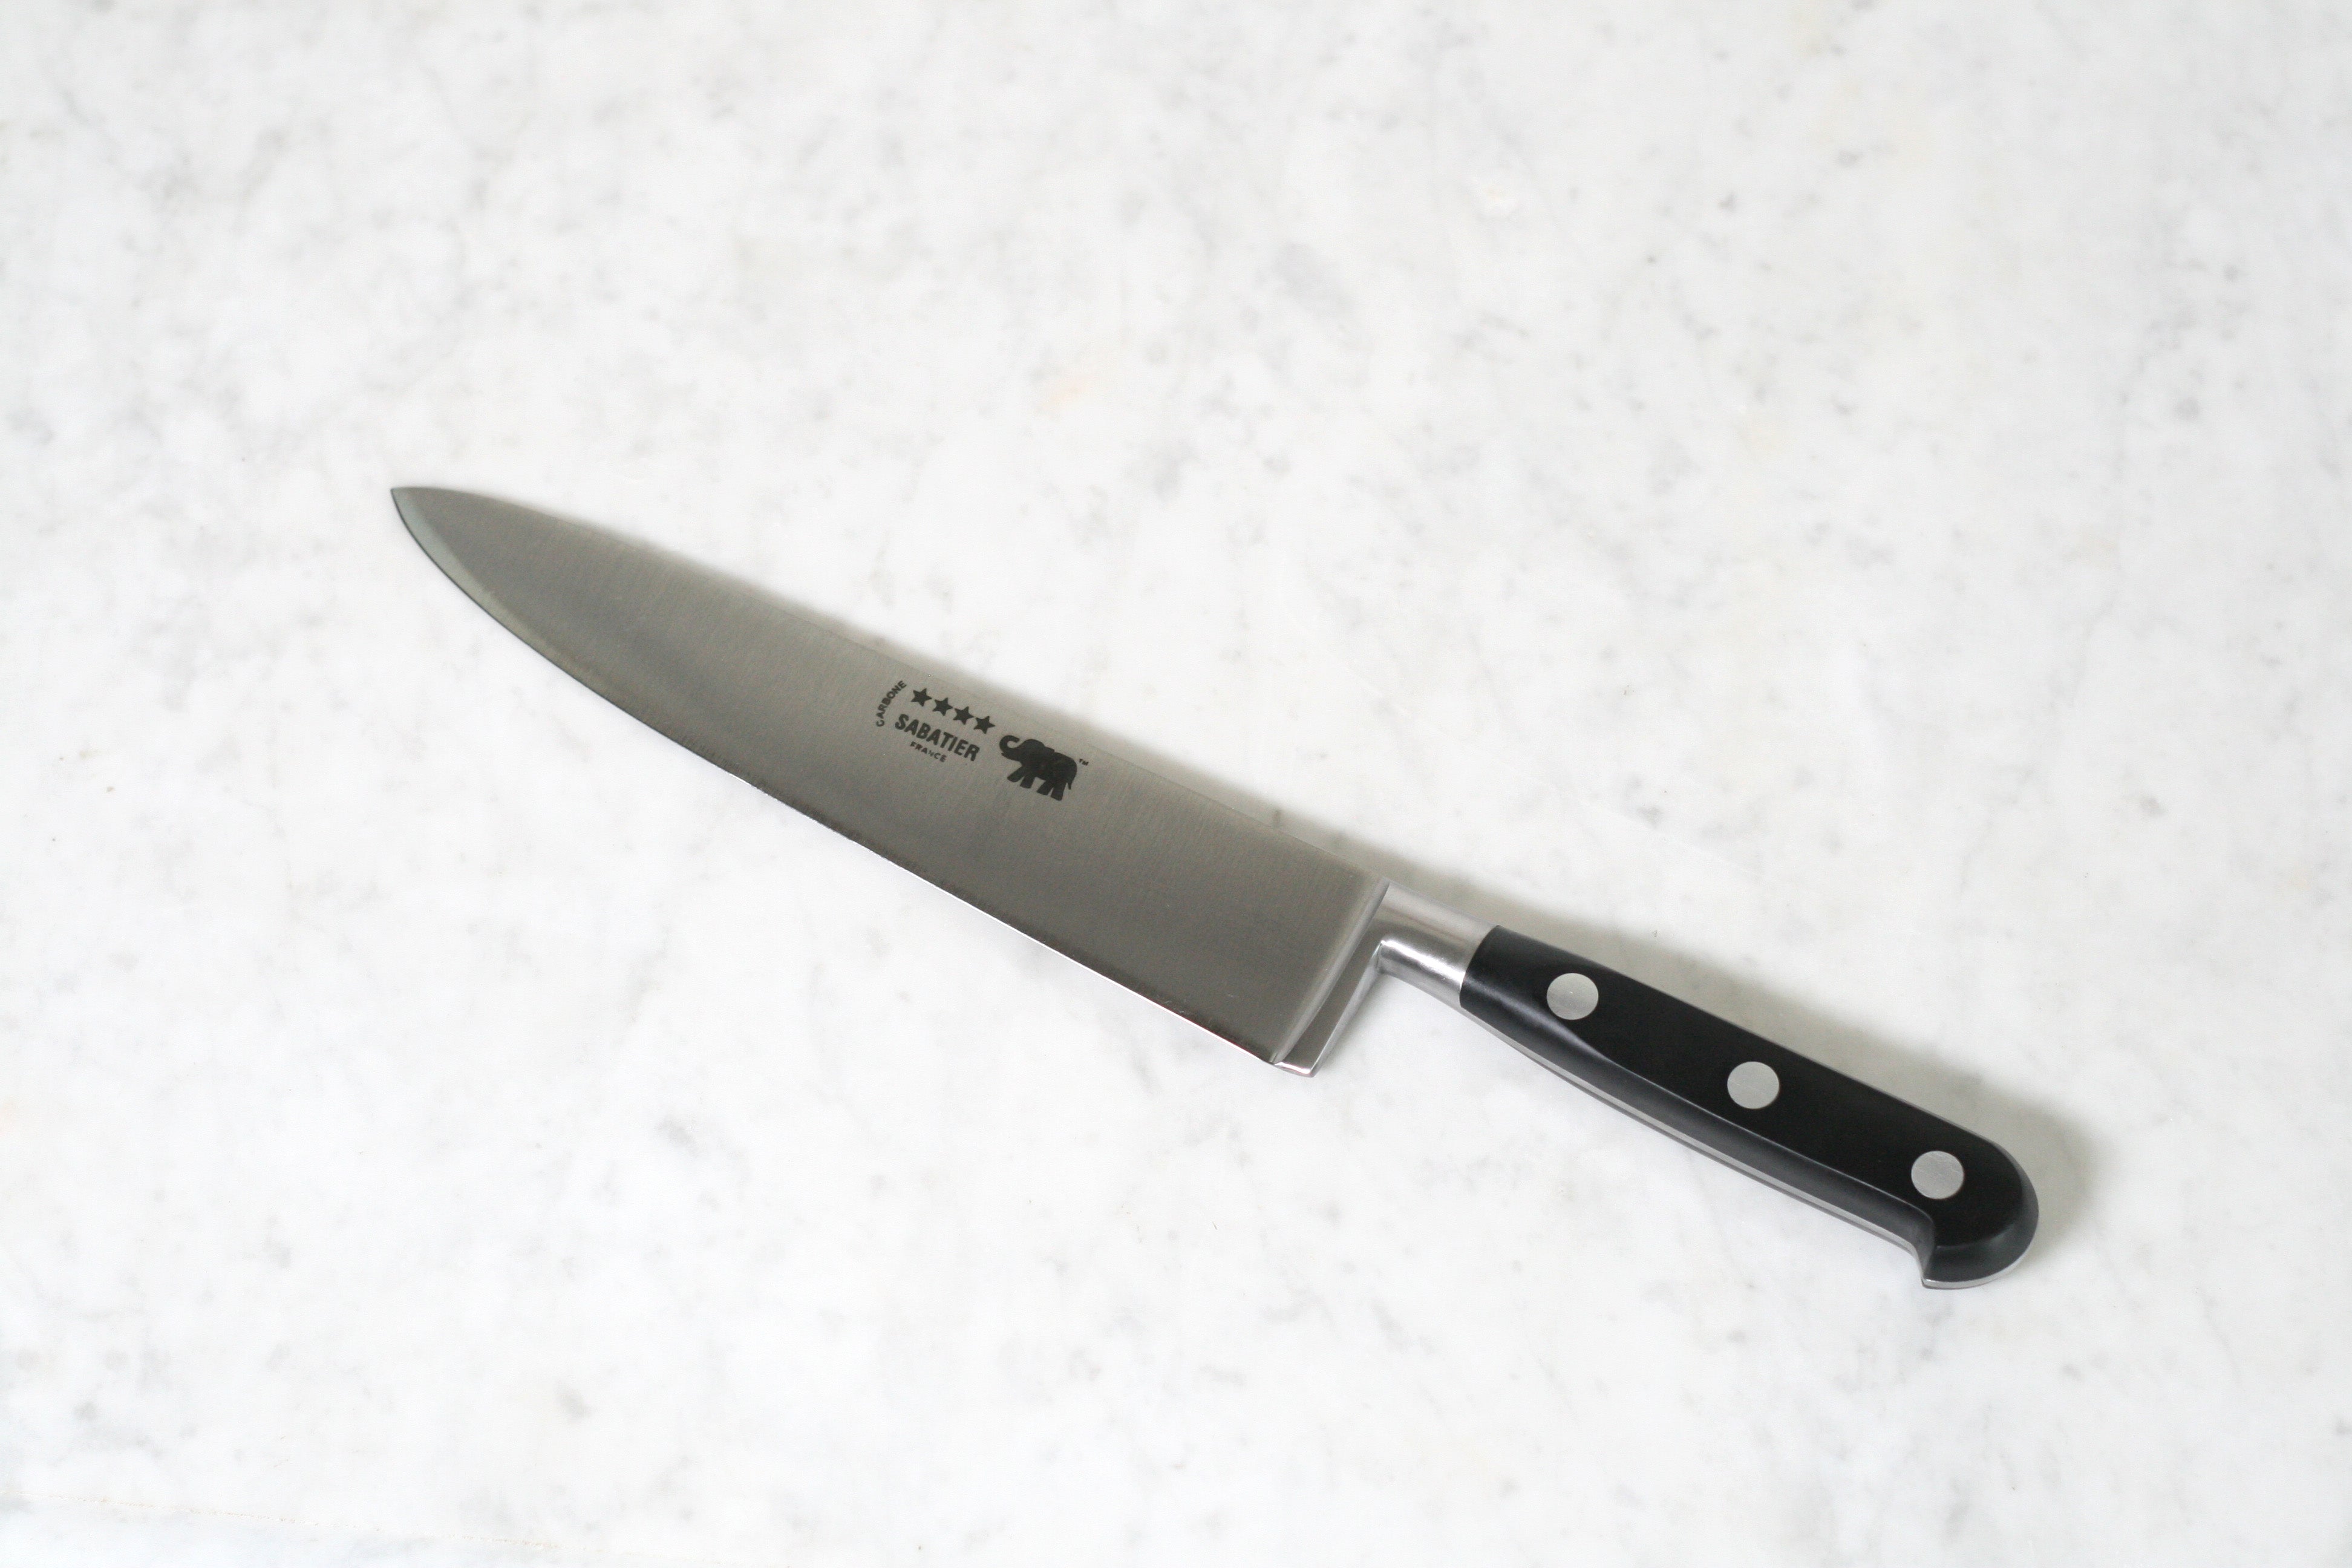 8 in (20 cm) Chef Knife - Carbon Steel – Sabatier Knife Shop